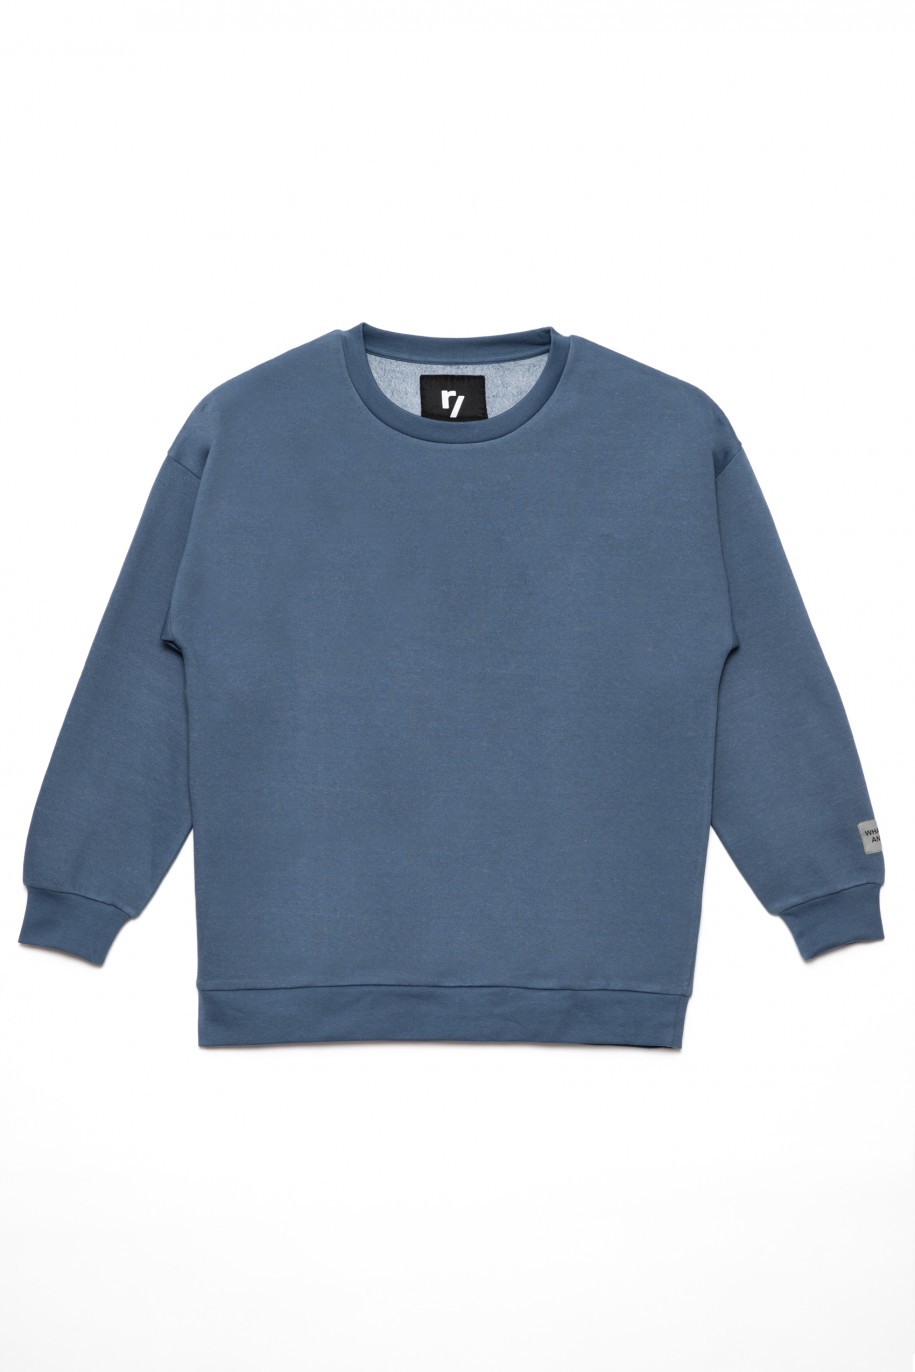 Niebieska gładka bluza dla chłopaka - 31680